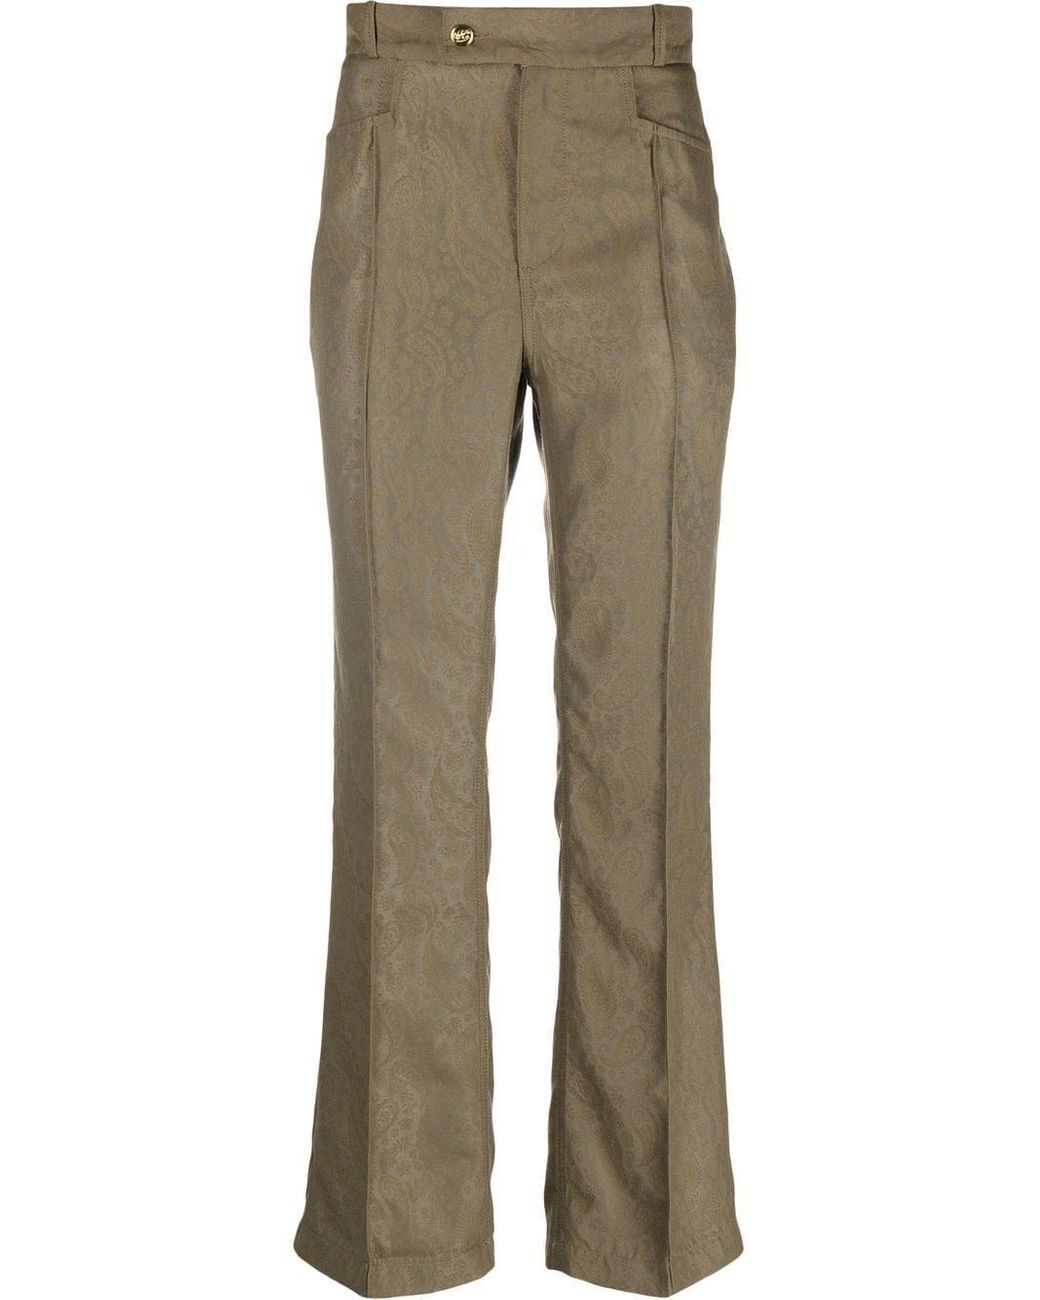 PUMA DOWNTOWN Corduroy Pants, Khaki Women's Casual Trouser